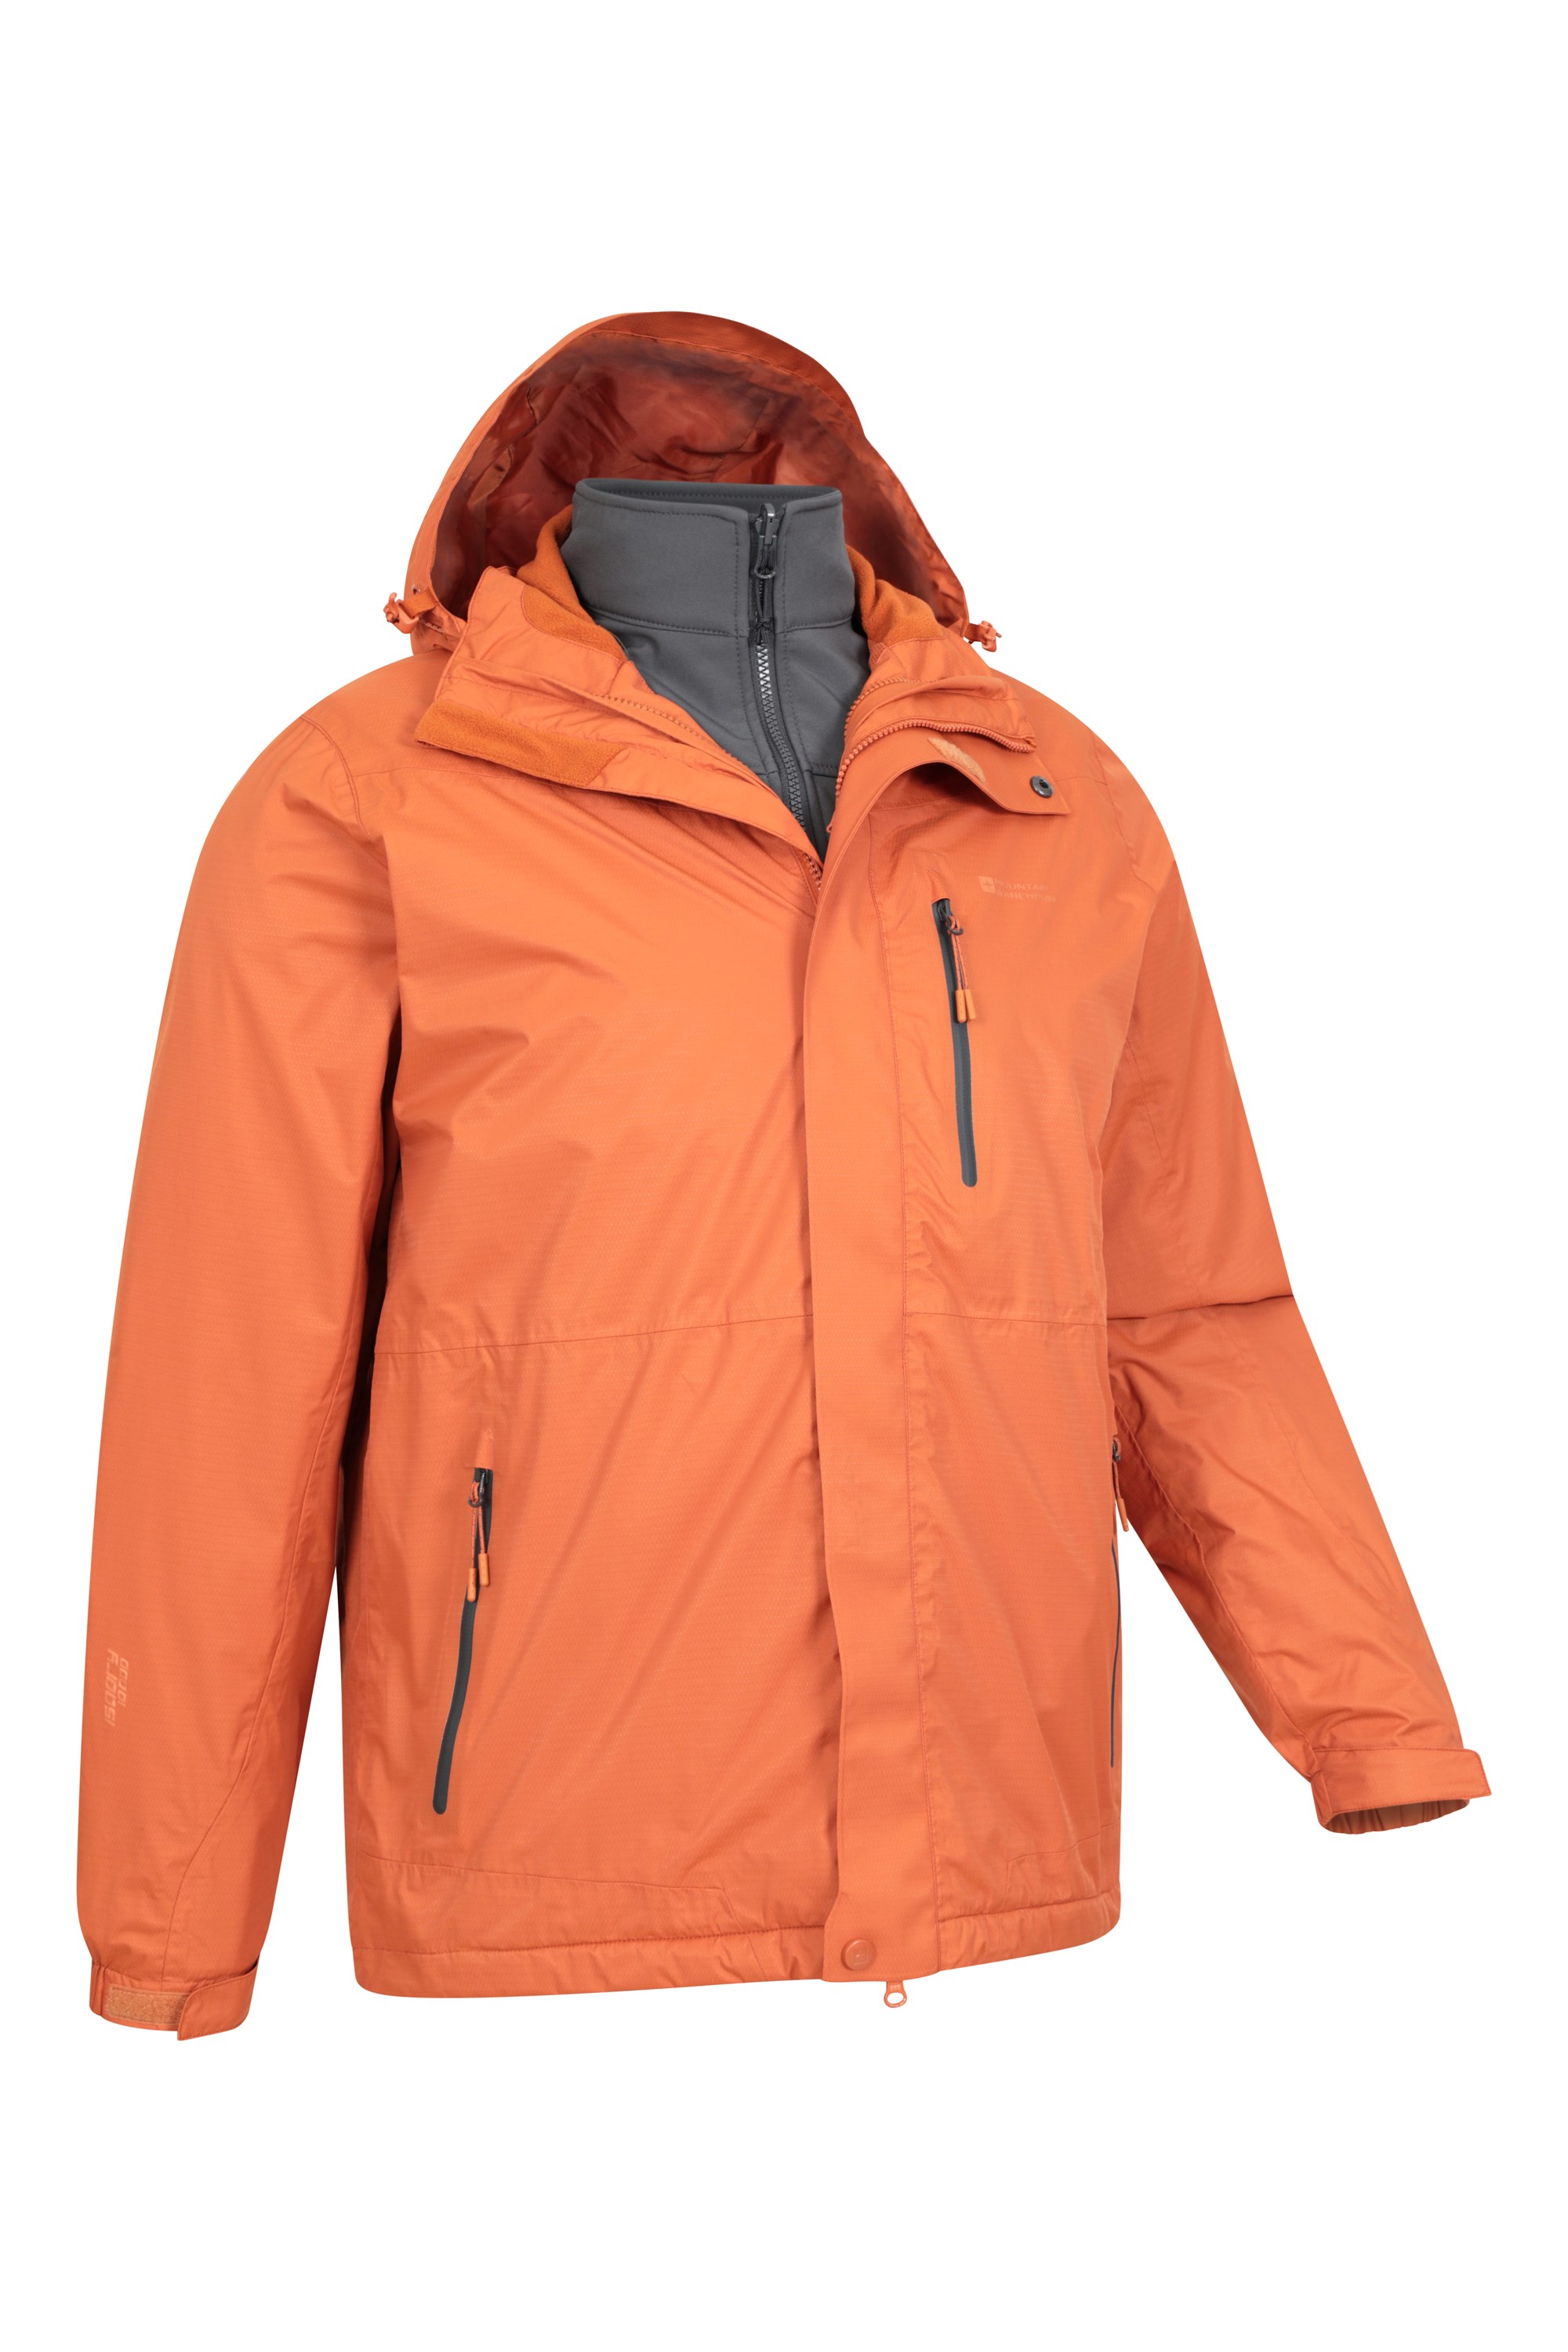 mountain-warehouse-bracken-womens-3-in-1-waterproof-rain-jacket